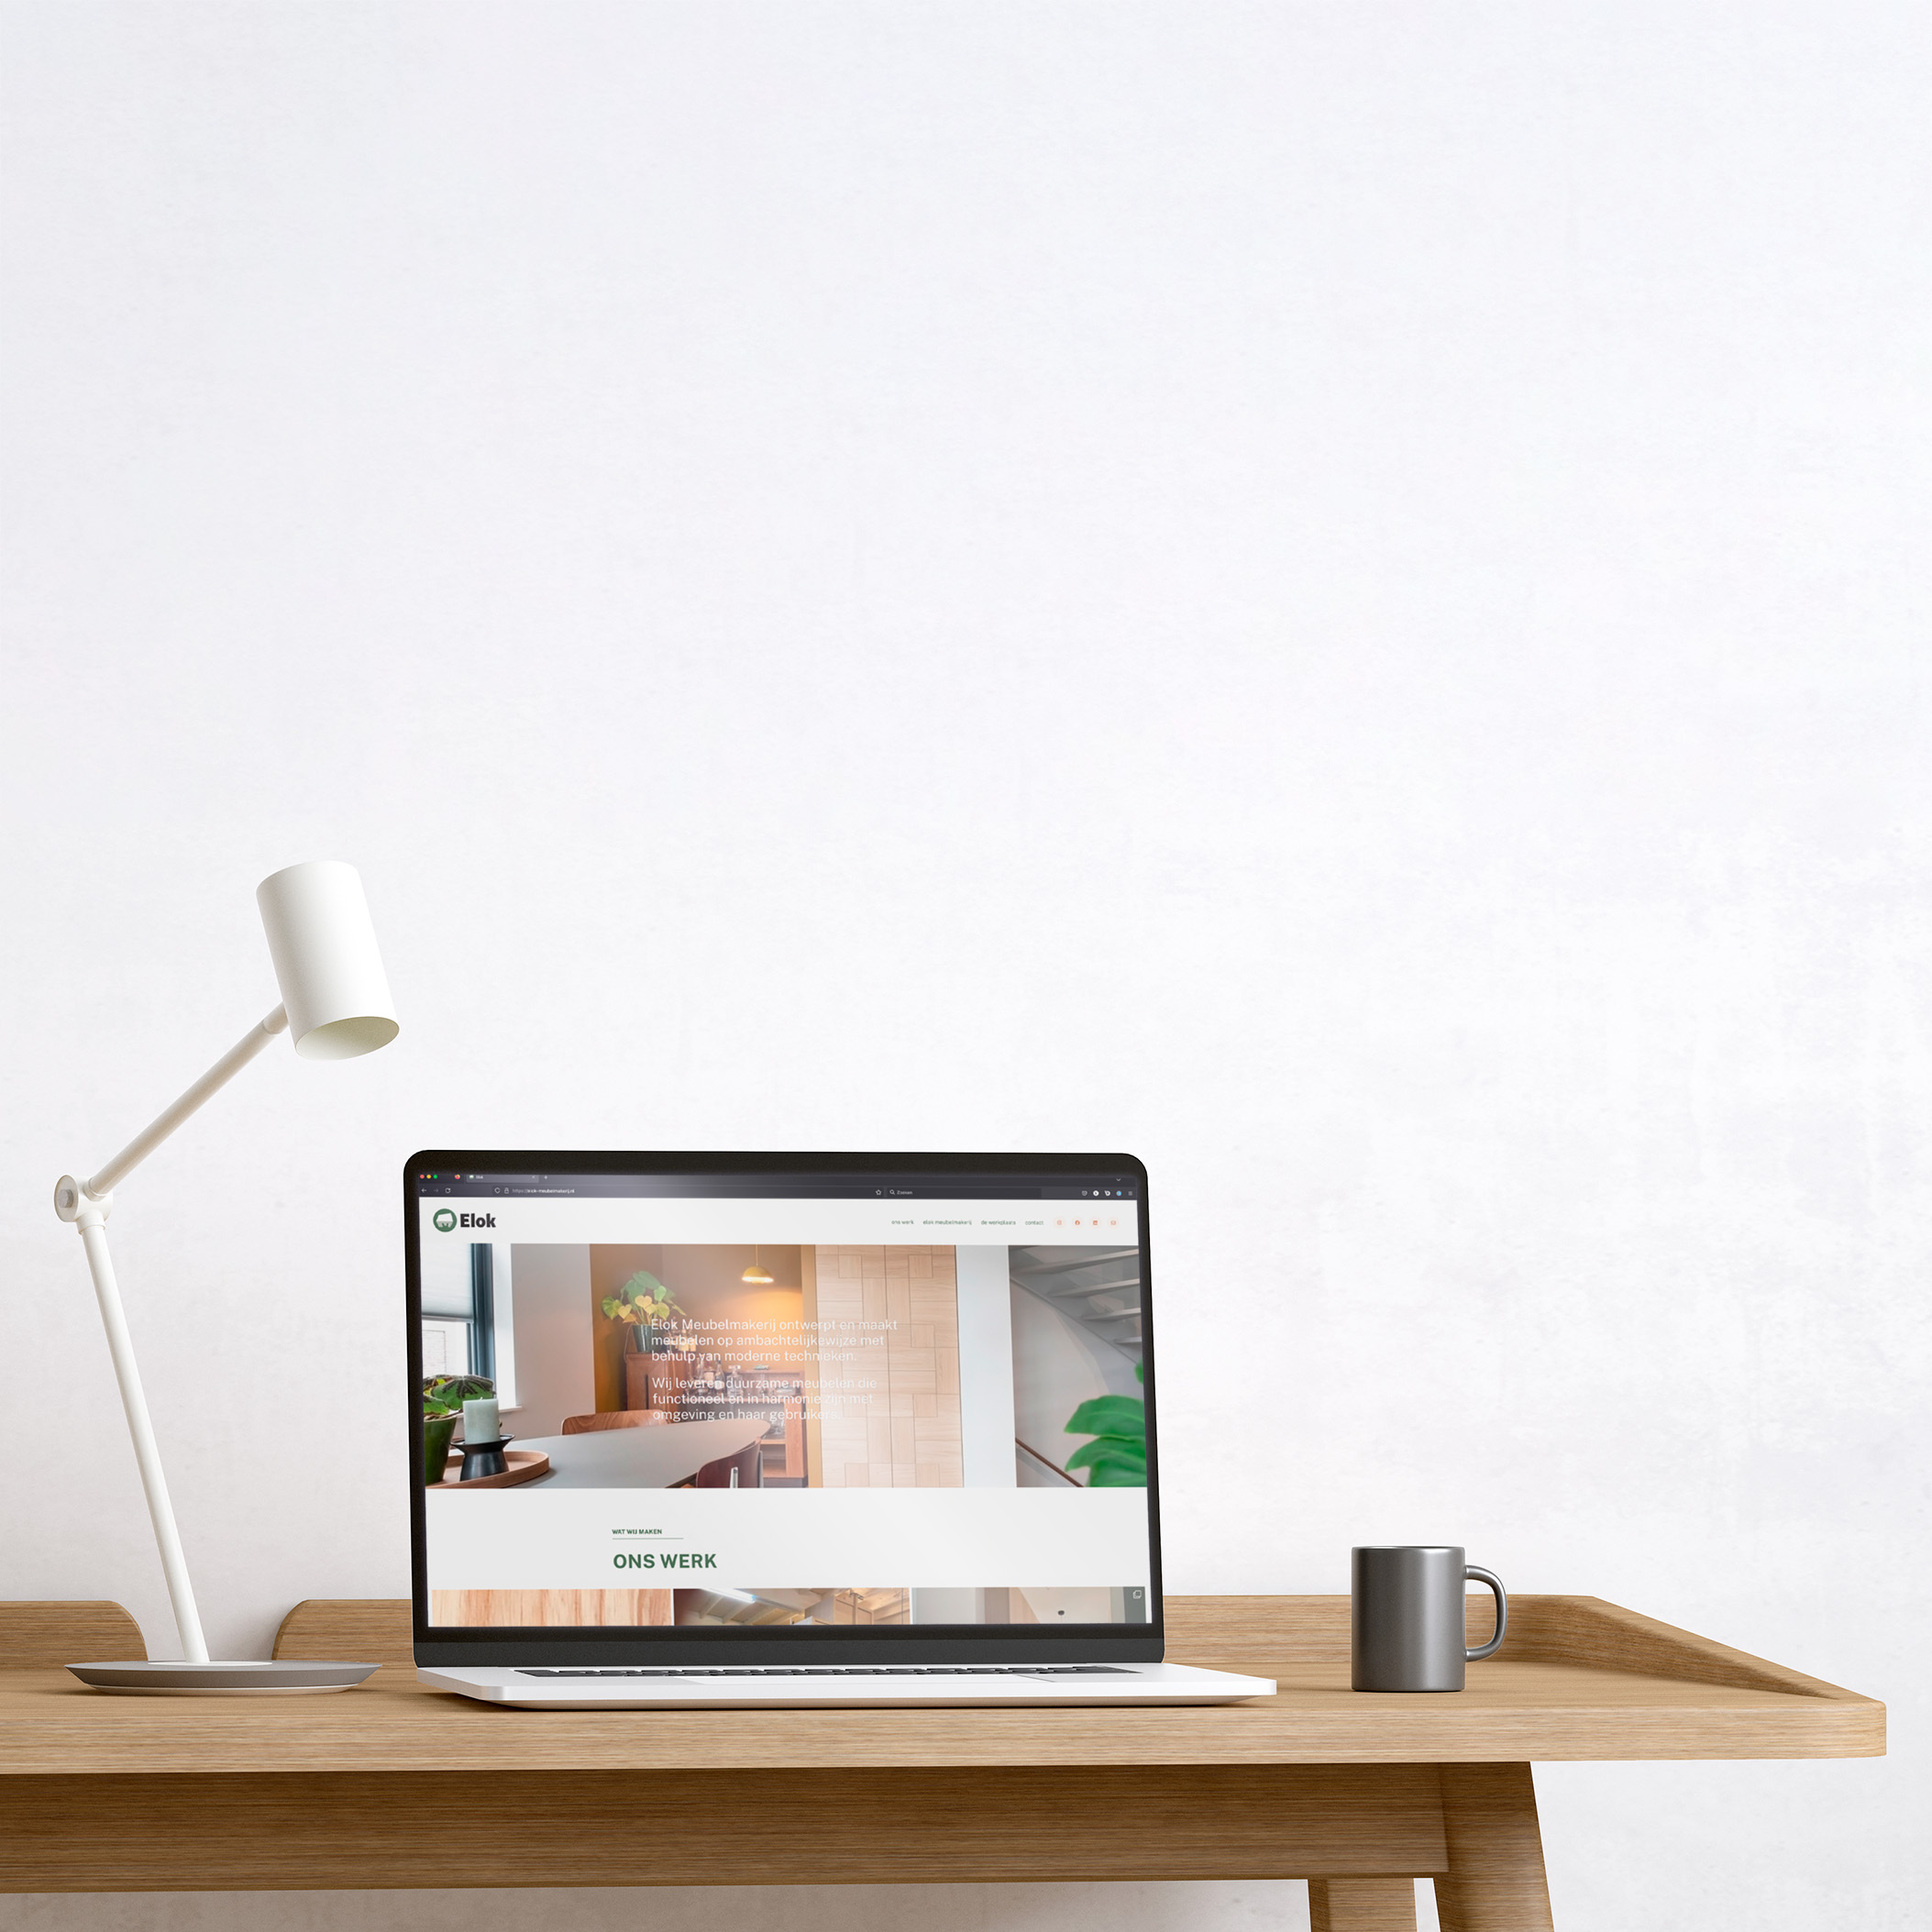 De Elok website, zichtbaar op een apple laptop die bovenop een design tafel staat.